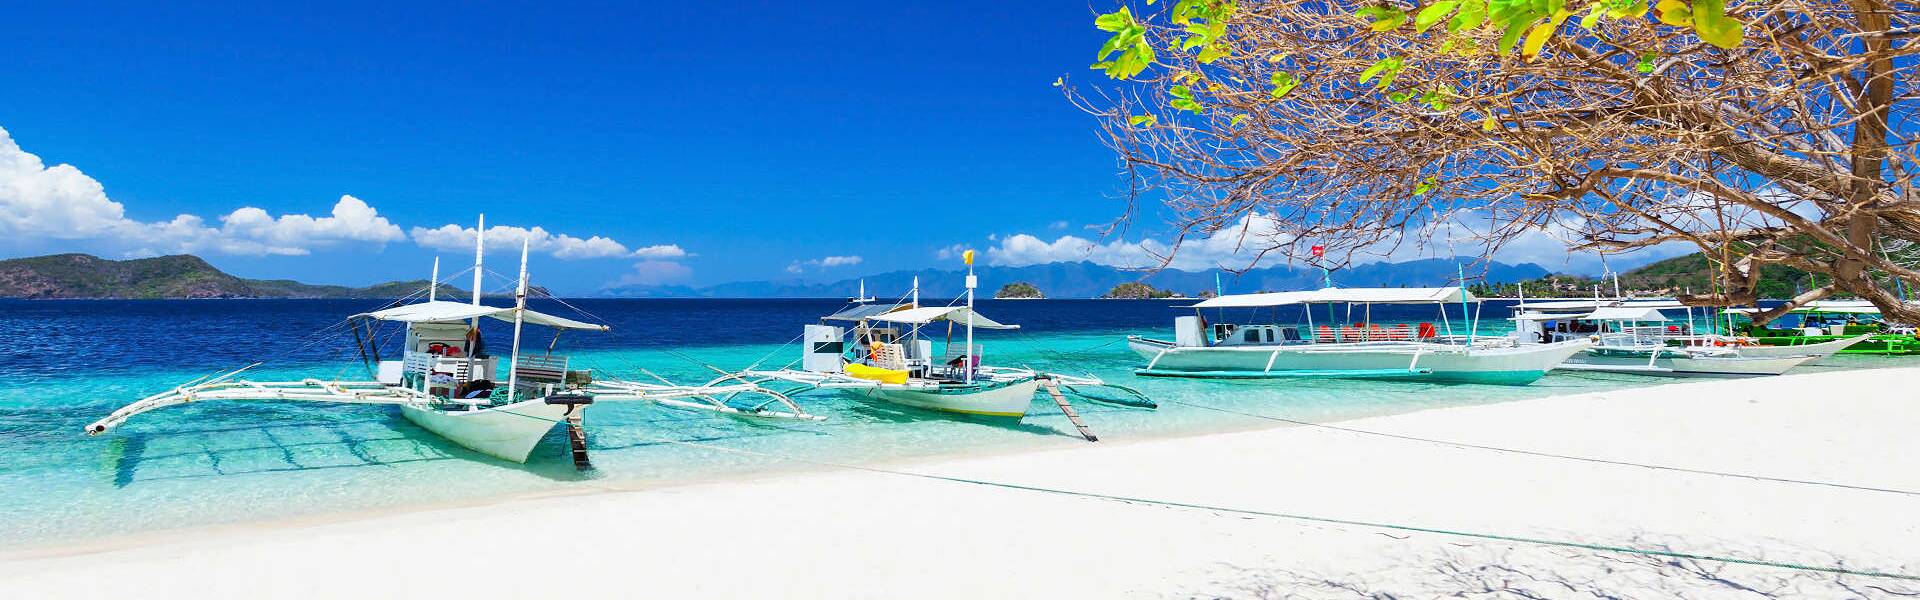 Erleben Sie mit AsiaGo einen faszinierenden Philippinen Urlaub